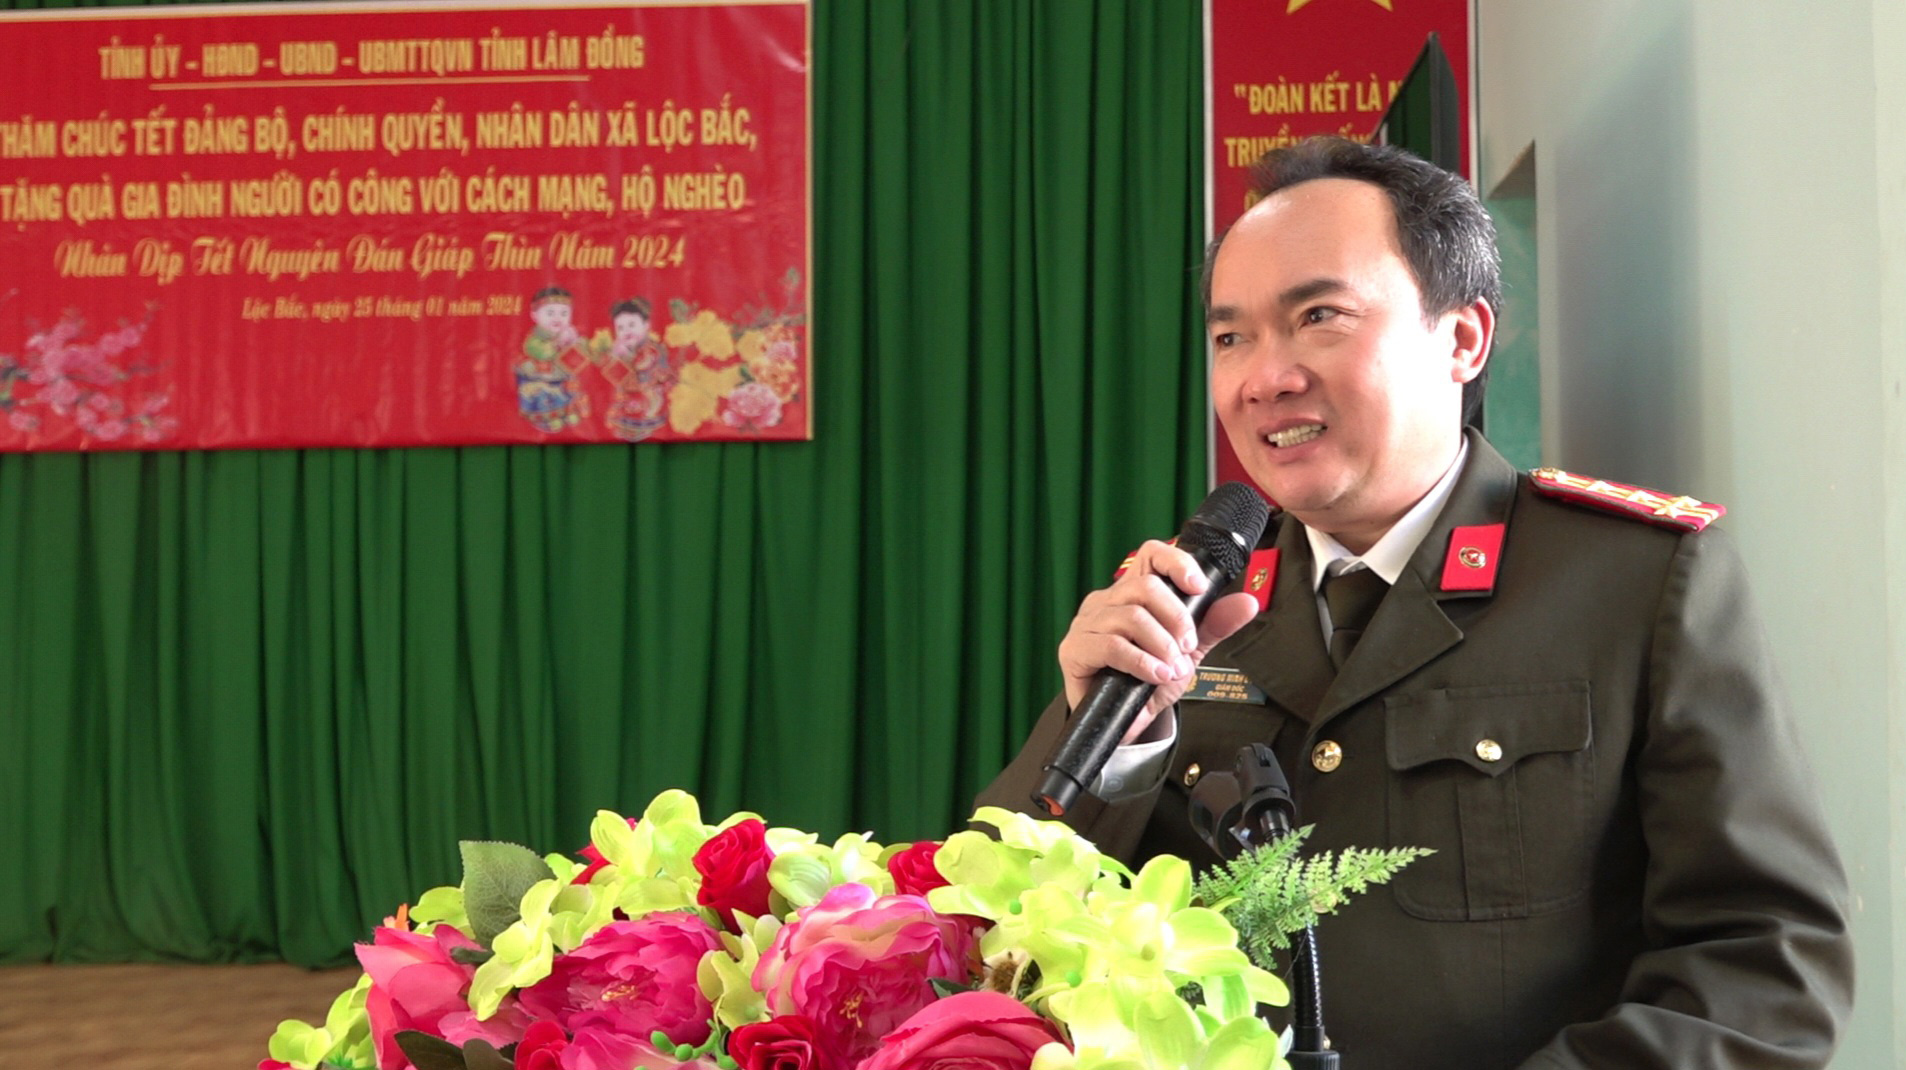 Đại tá Trương Minh Đương - Giám đốc Công an tỉnh thông tin đến cán bộ, nhân dân về tình hình ANTT